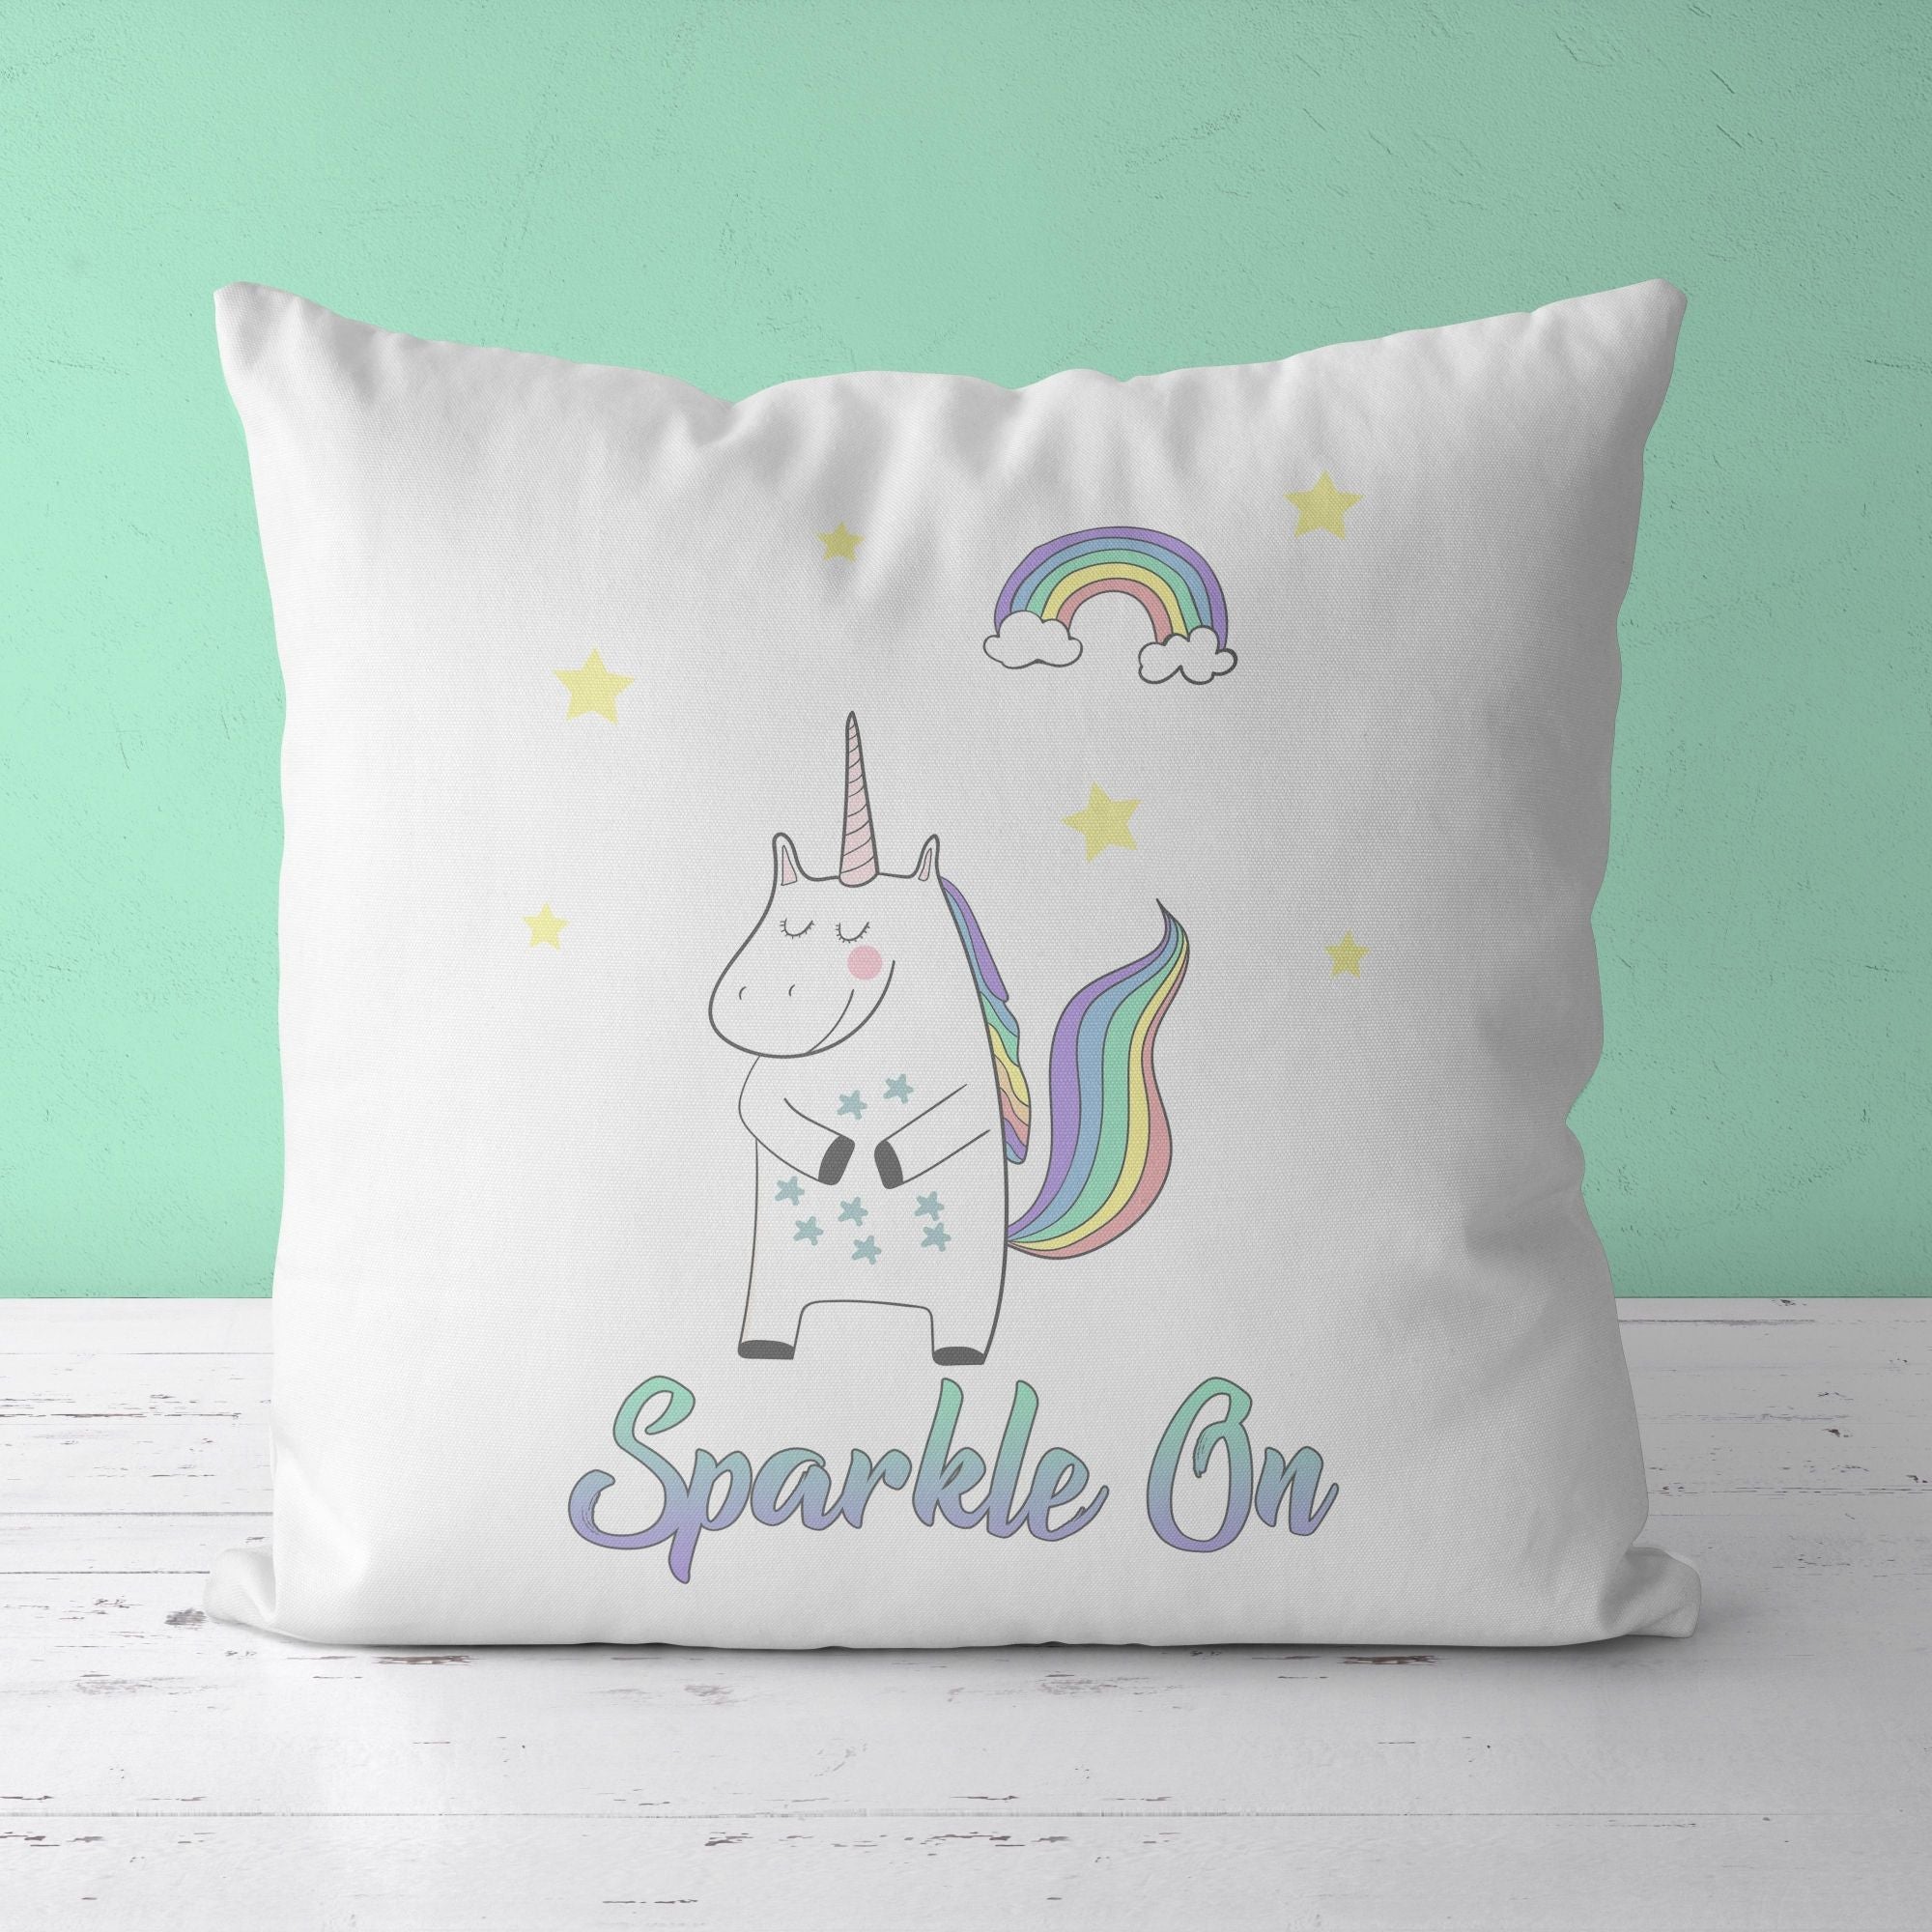 Throw Pillow For Nurseries & Kid's Rooms - Unicorn Sparkles